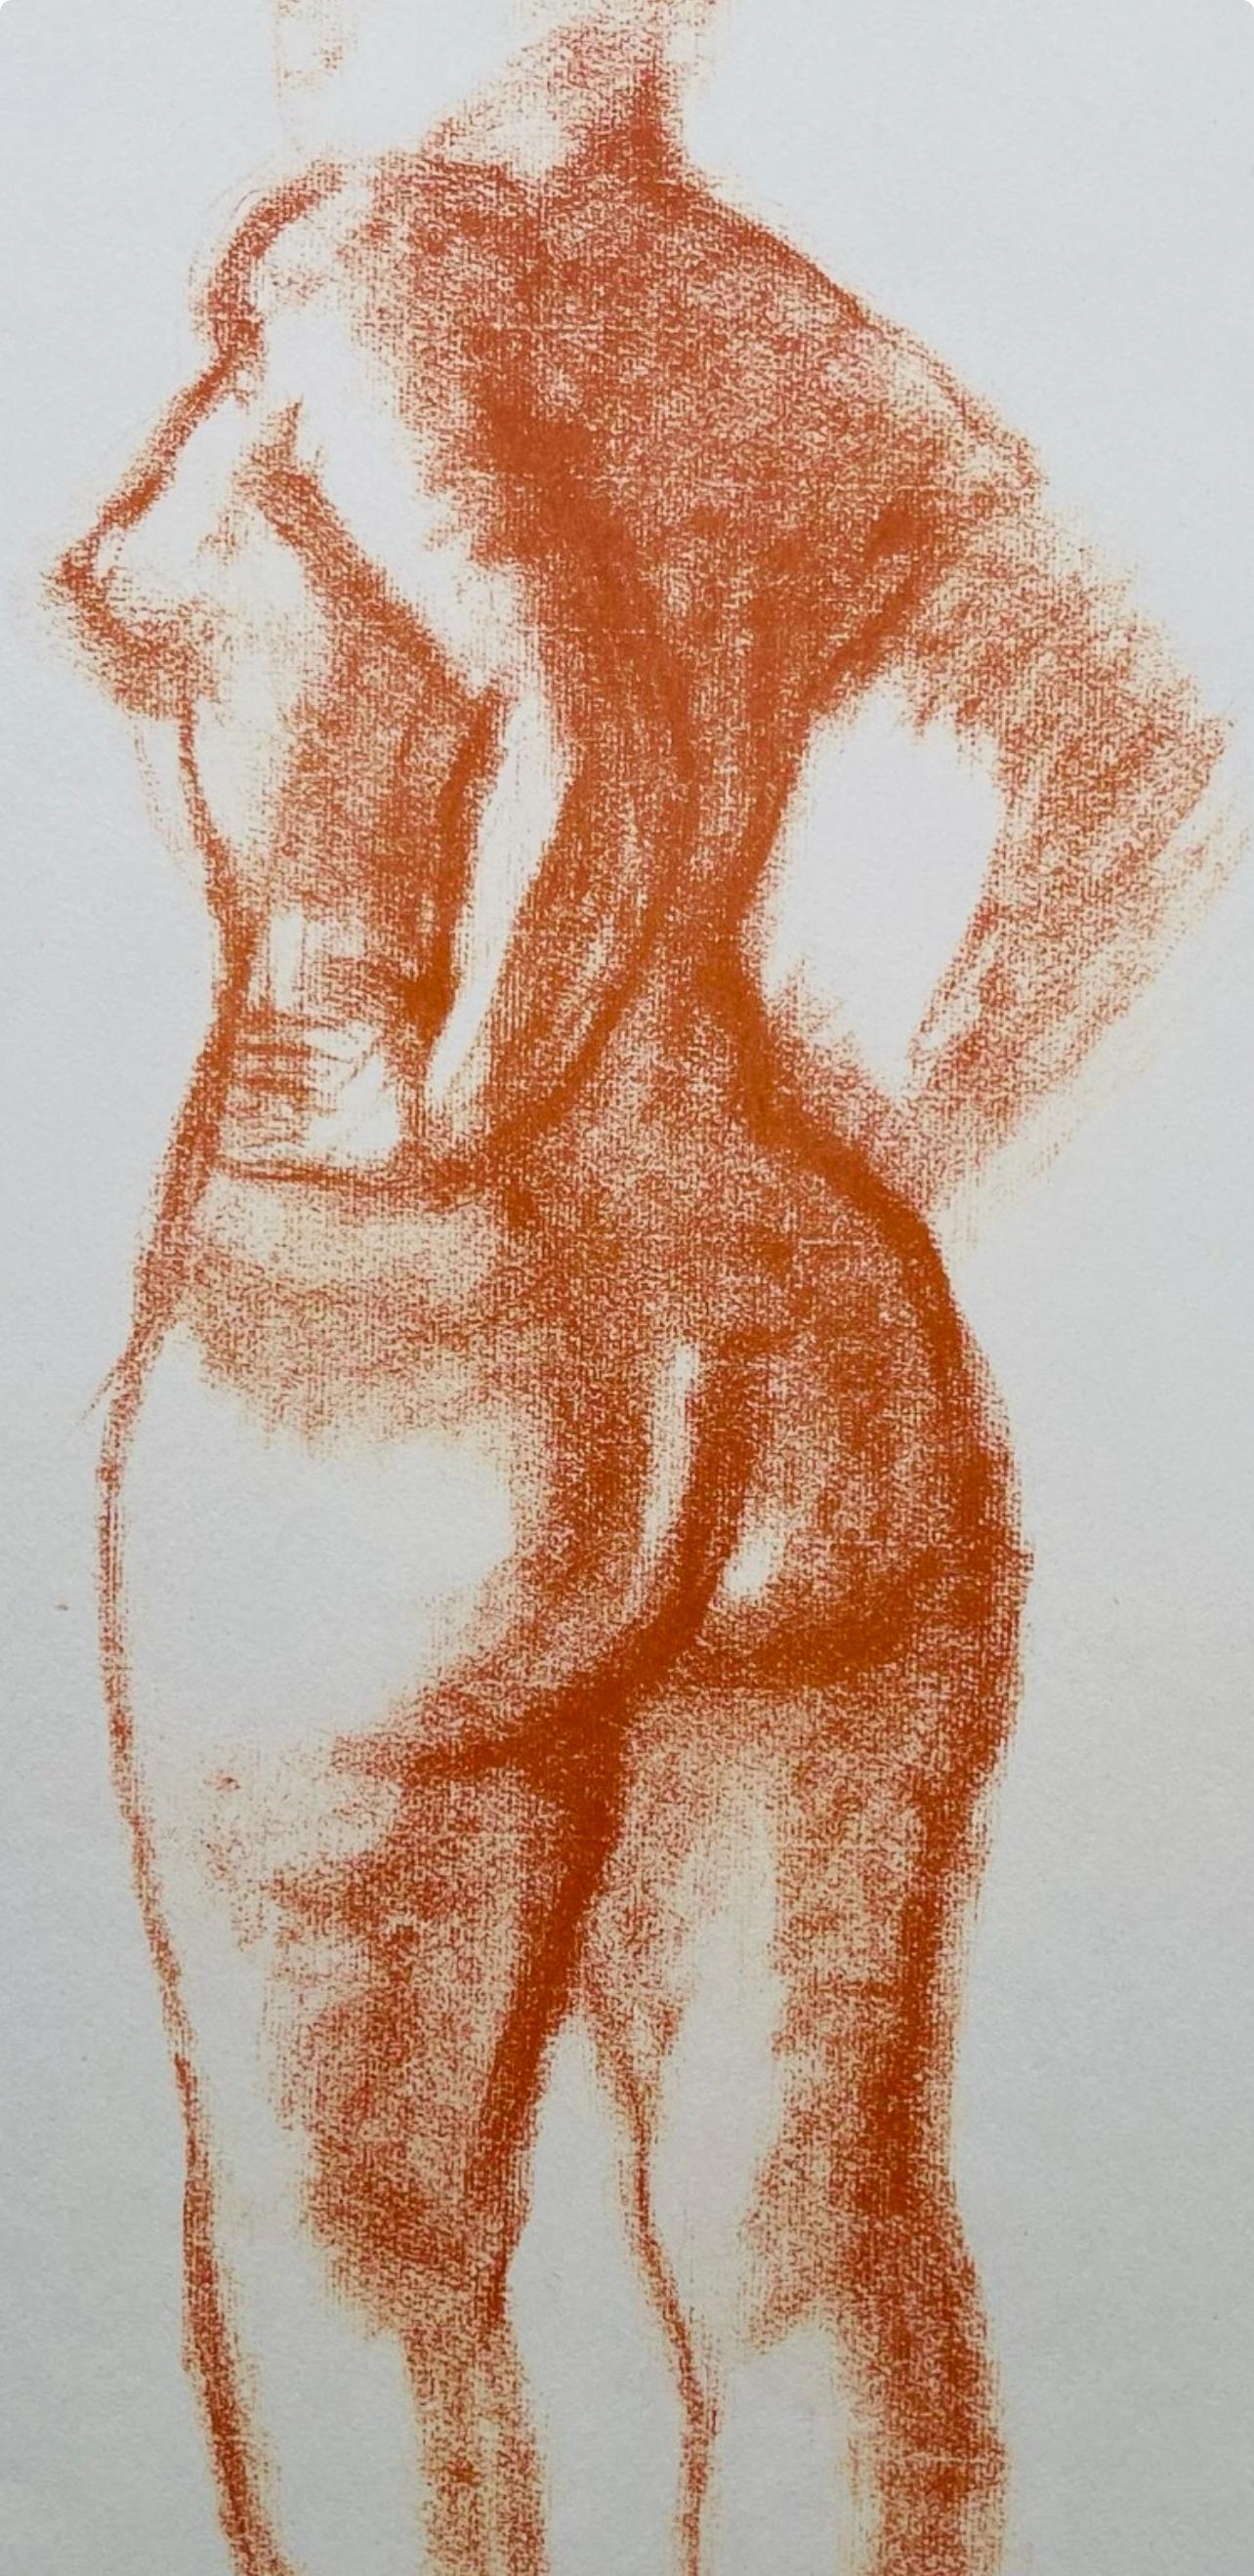 Derain, Composition, Derrière le miroir (after) - Modern Print by André Derain